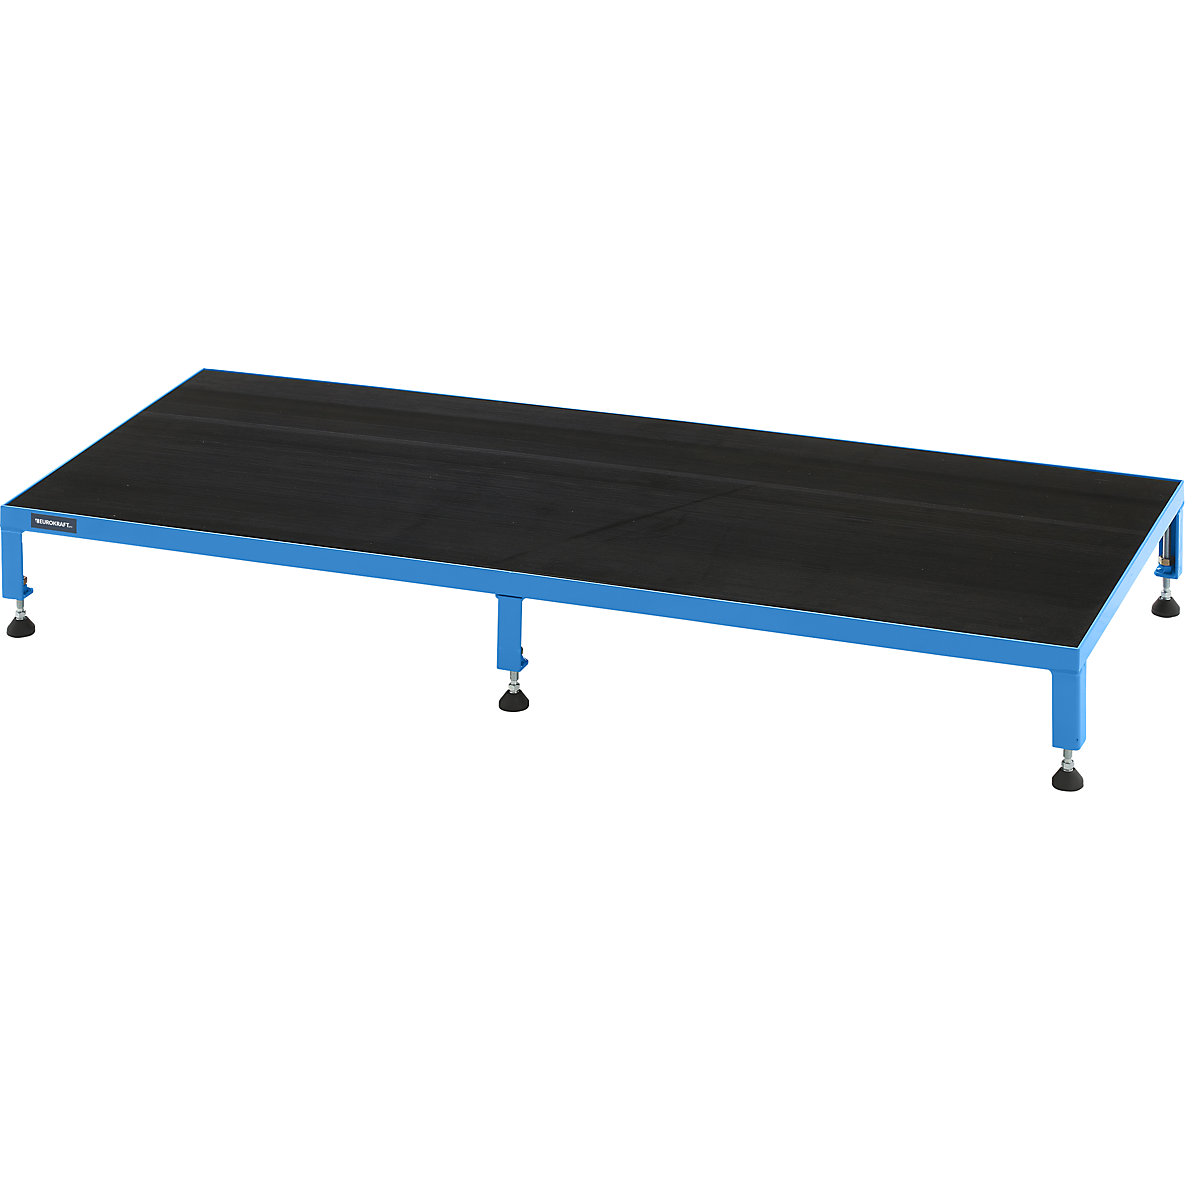 EUROKRAFTpro – Plate-forme de travail réglable en hauteur de 165 à 230 mm, avec plate-forme en caoutchouc strié, L x l plate-forme 1510 x 610 mm, bleu clair